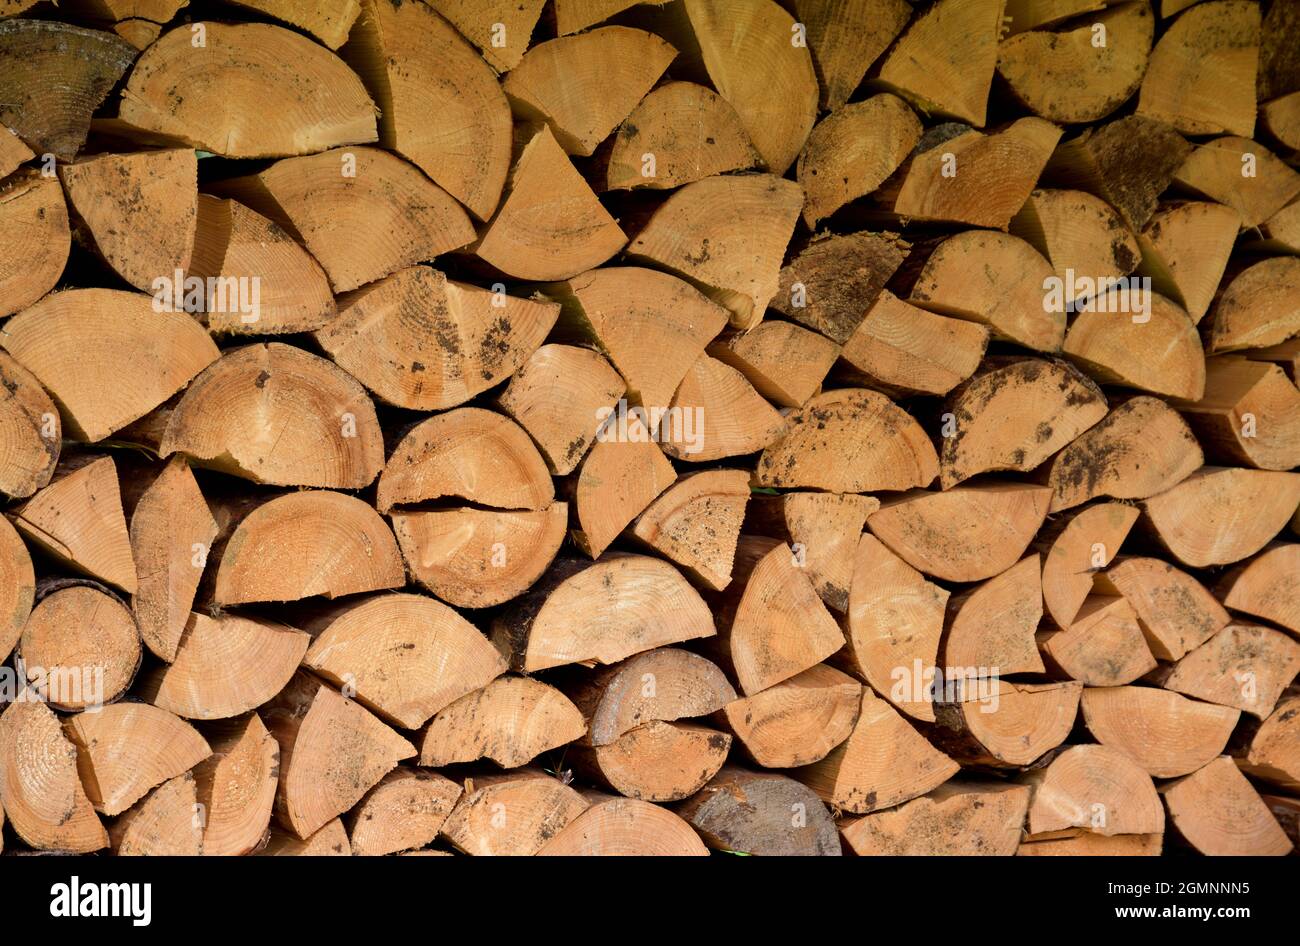 Les billes de bois s'empilent en bon ordre pour l'hiver Banque D'Images